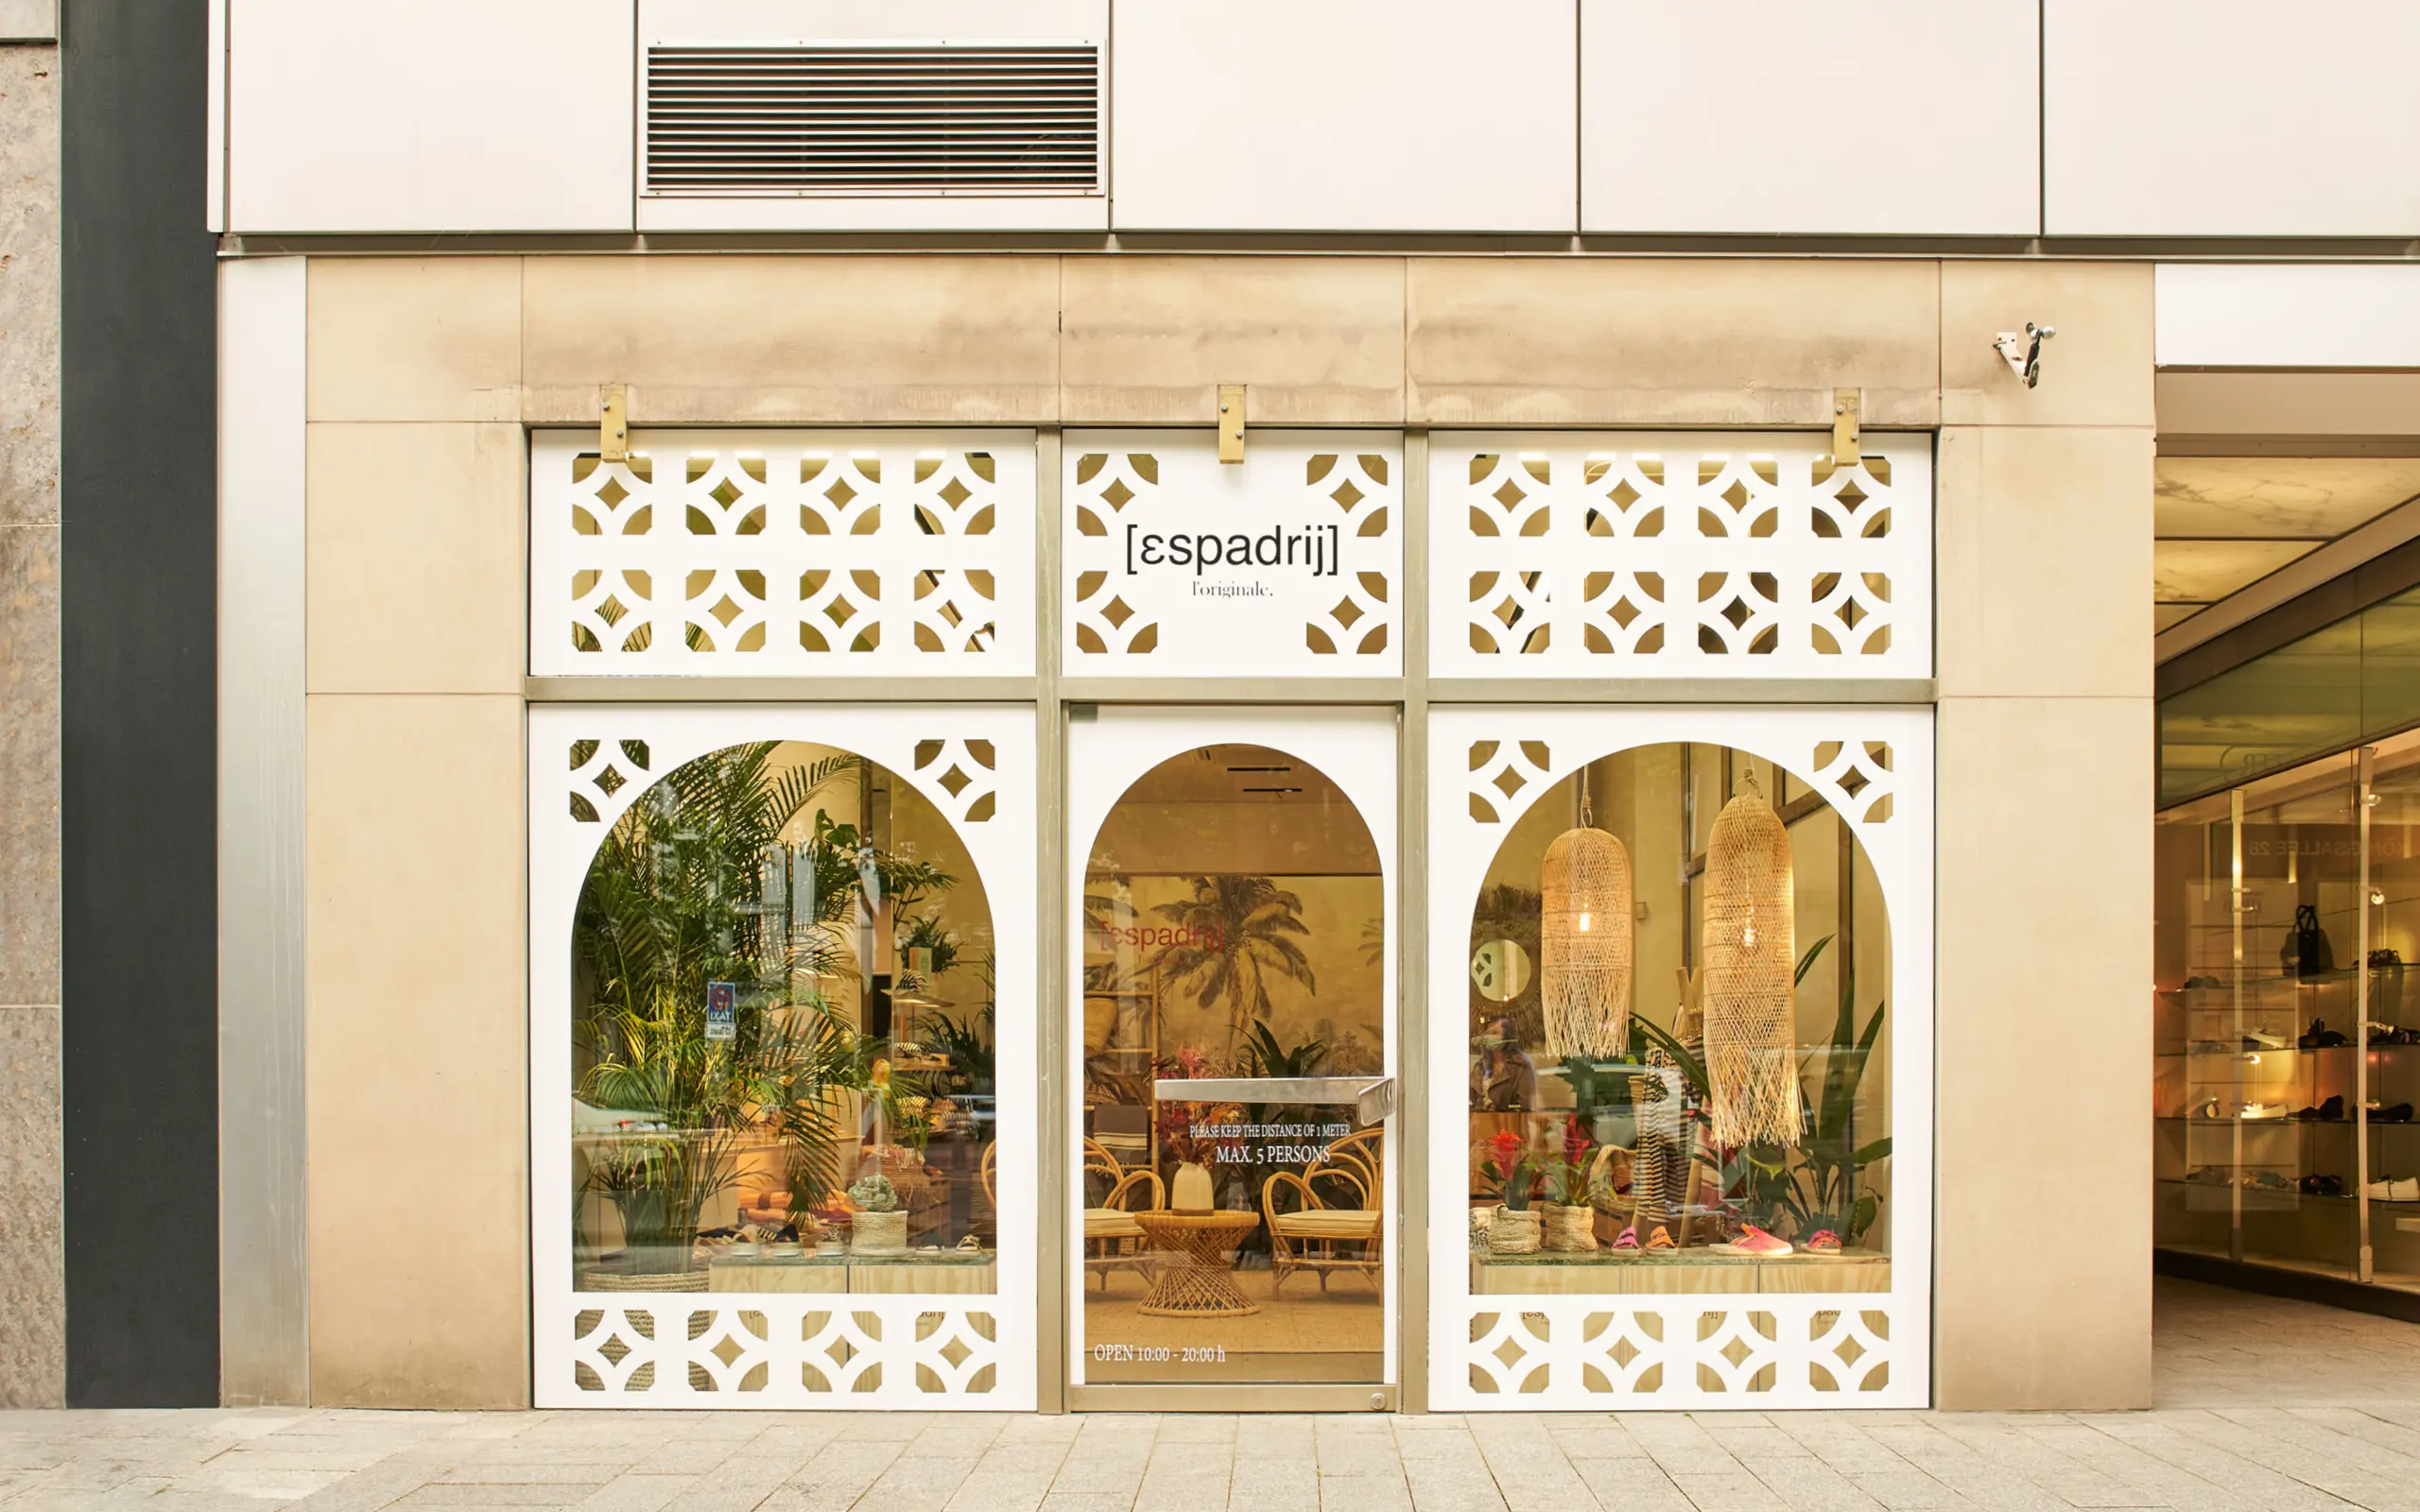 Inspiriert von marokkanischen Architekturelementen spiegelt die Fassade die Ausrichtung der aktuellen Sommerkollektion des Labels wider.